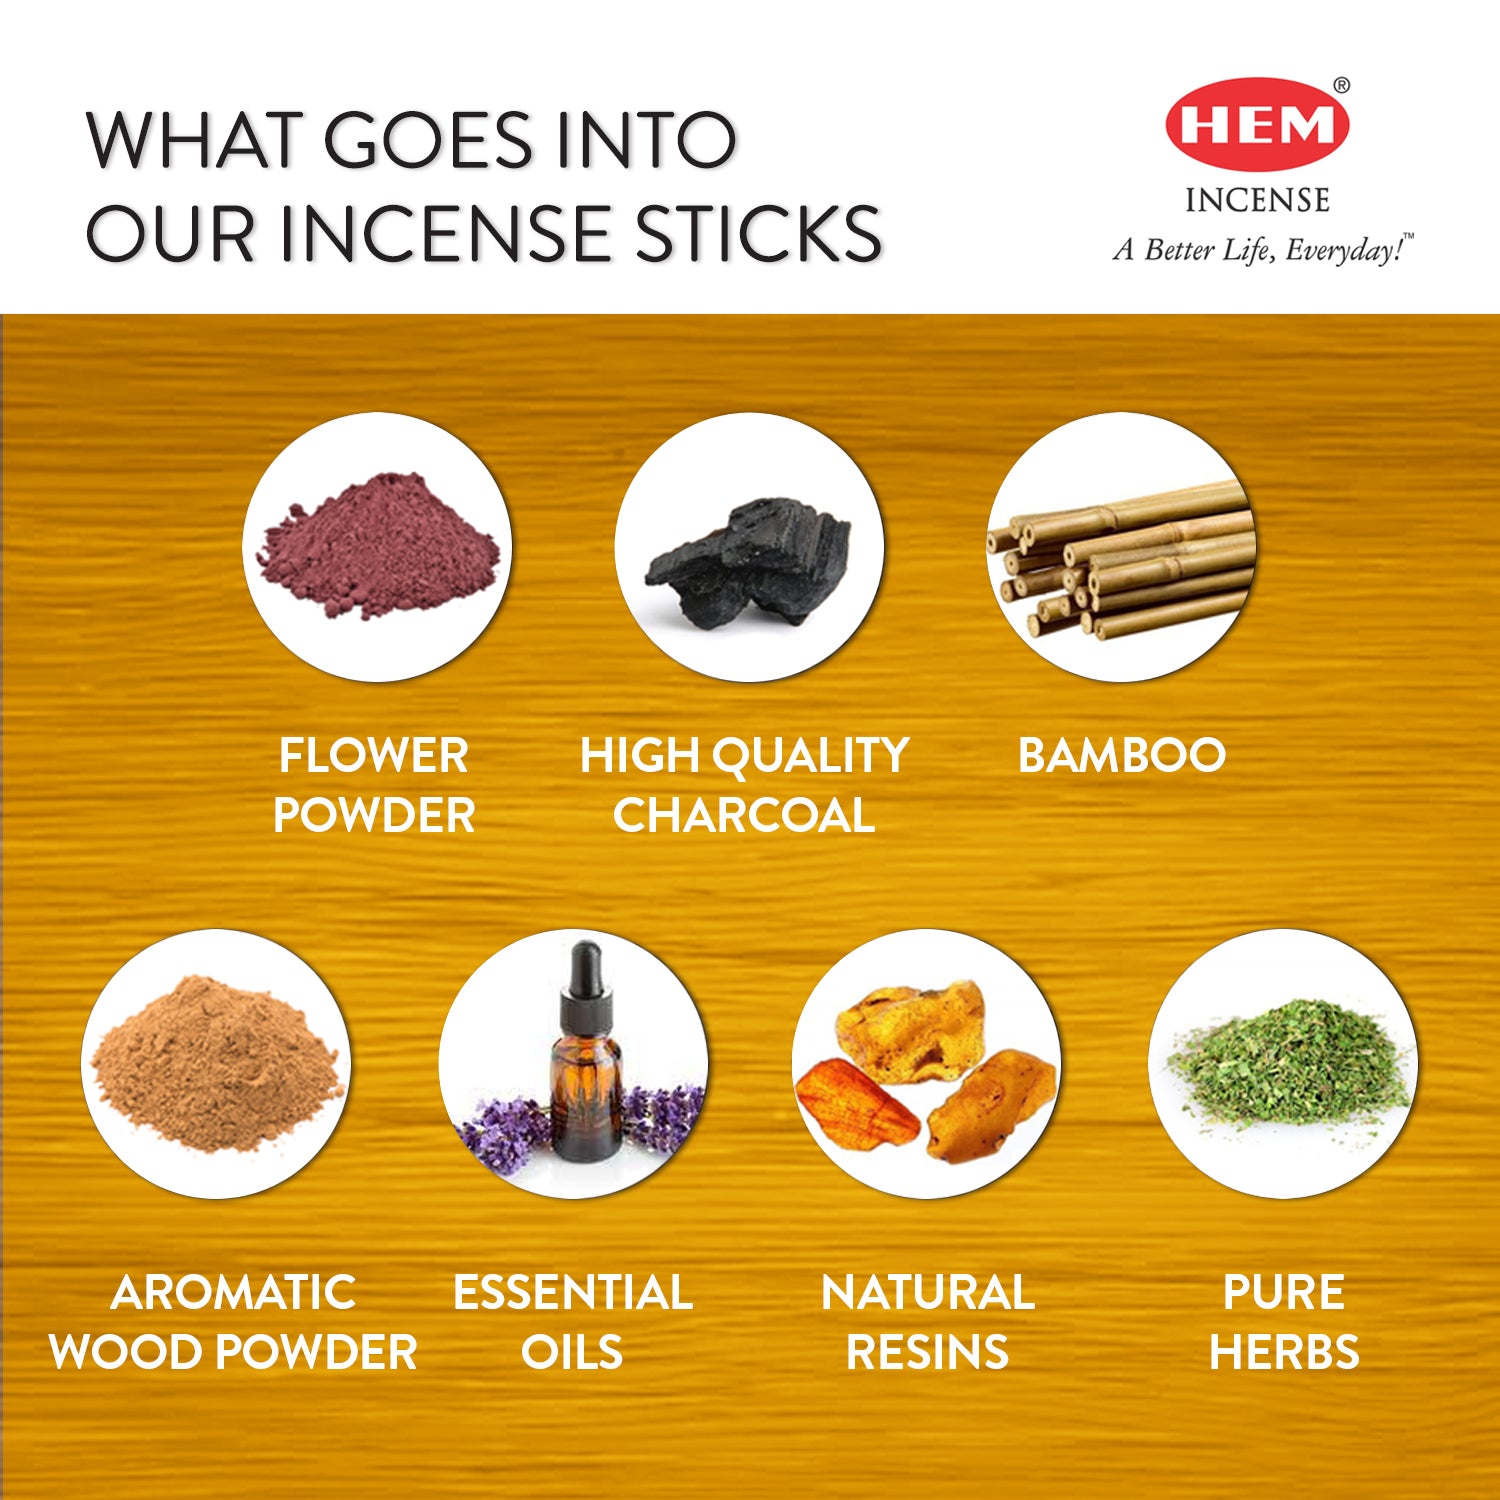 hem-catholic-church-natural-masala-incense-sticks-ingredients